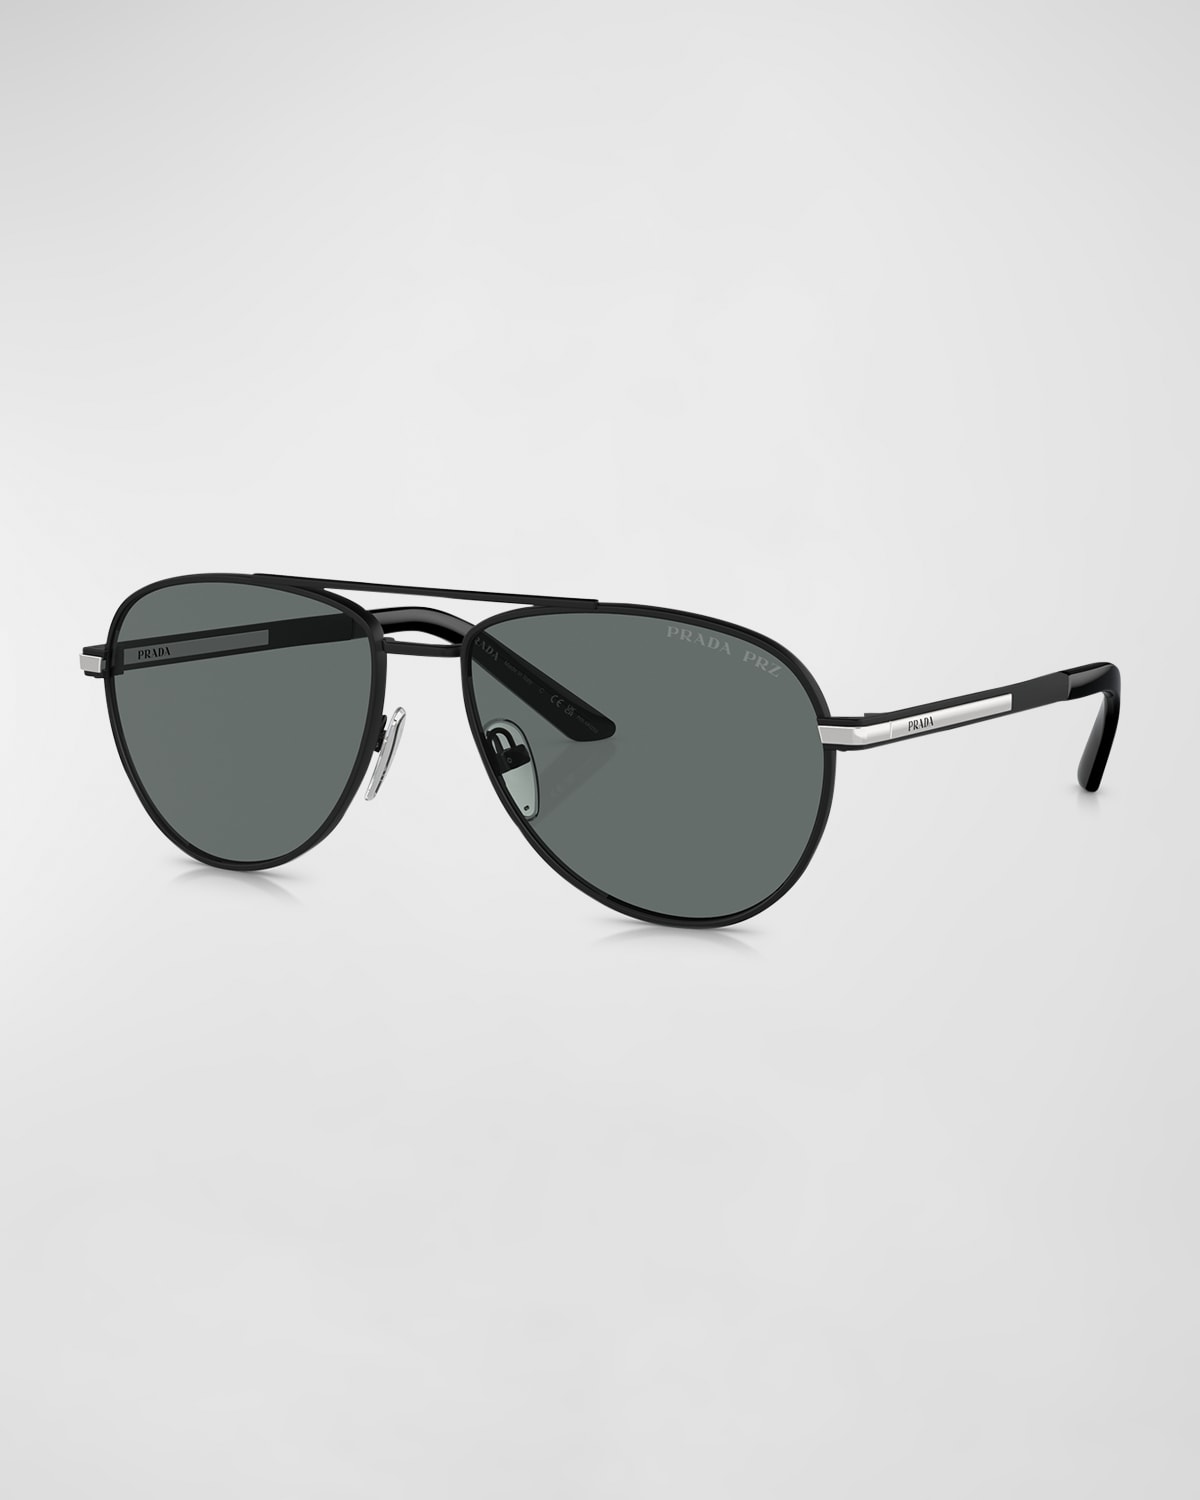 Prada Men's Metal Aviator Sunglasses In Matte Black